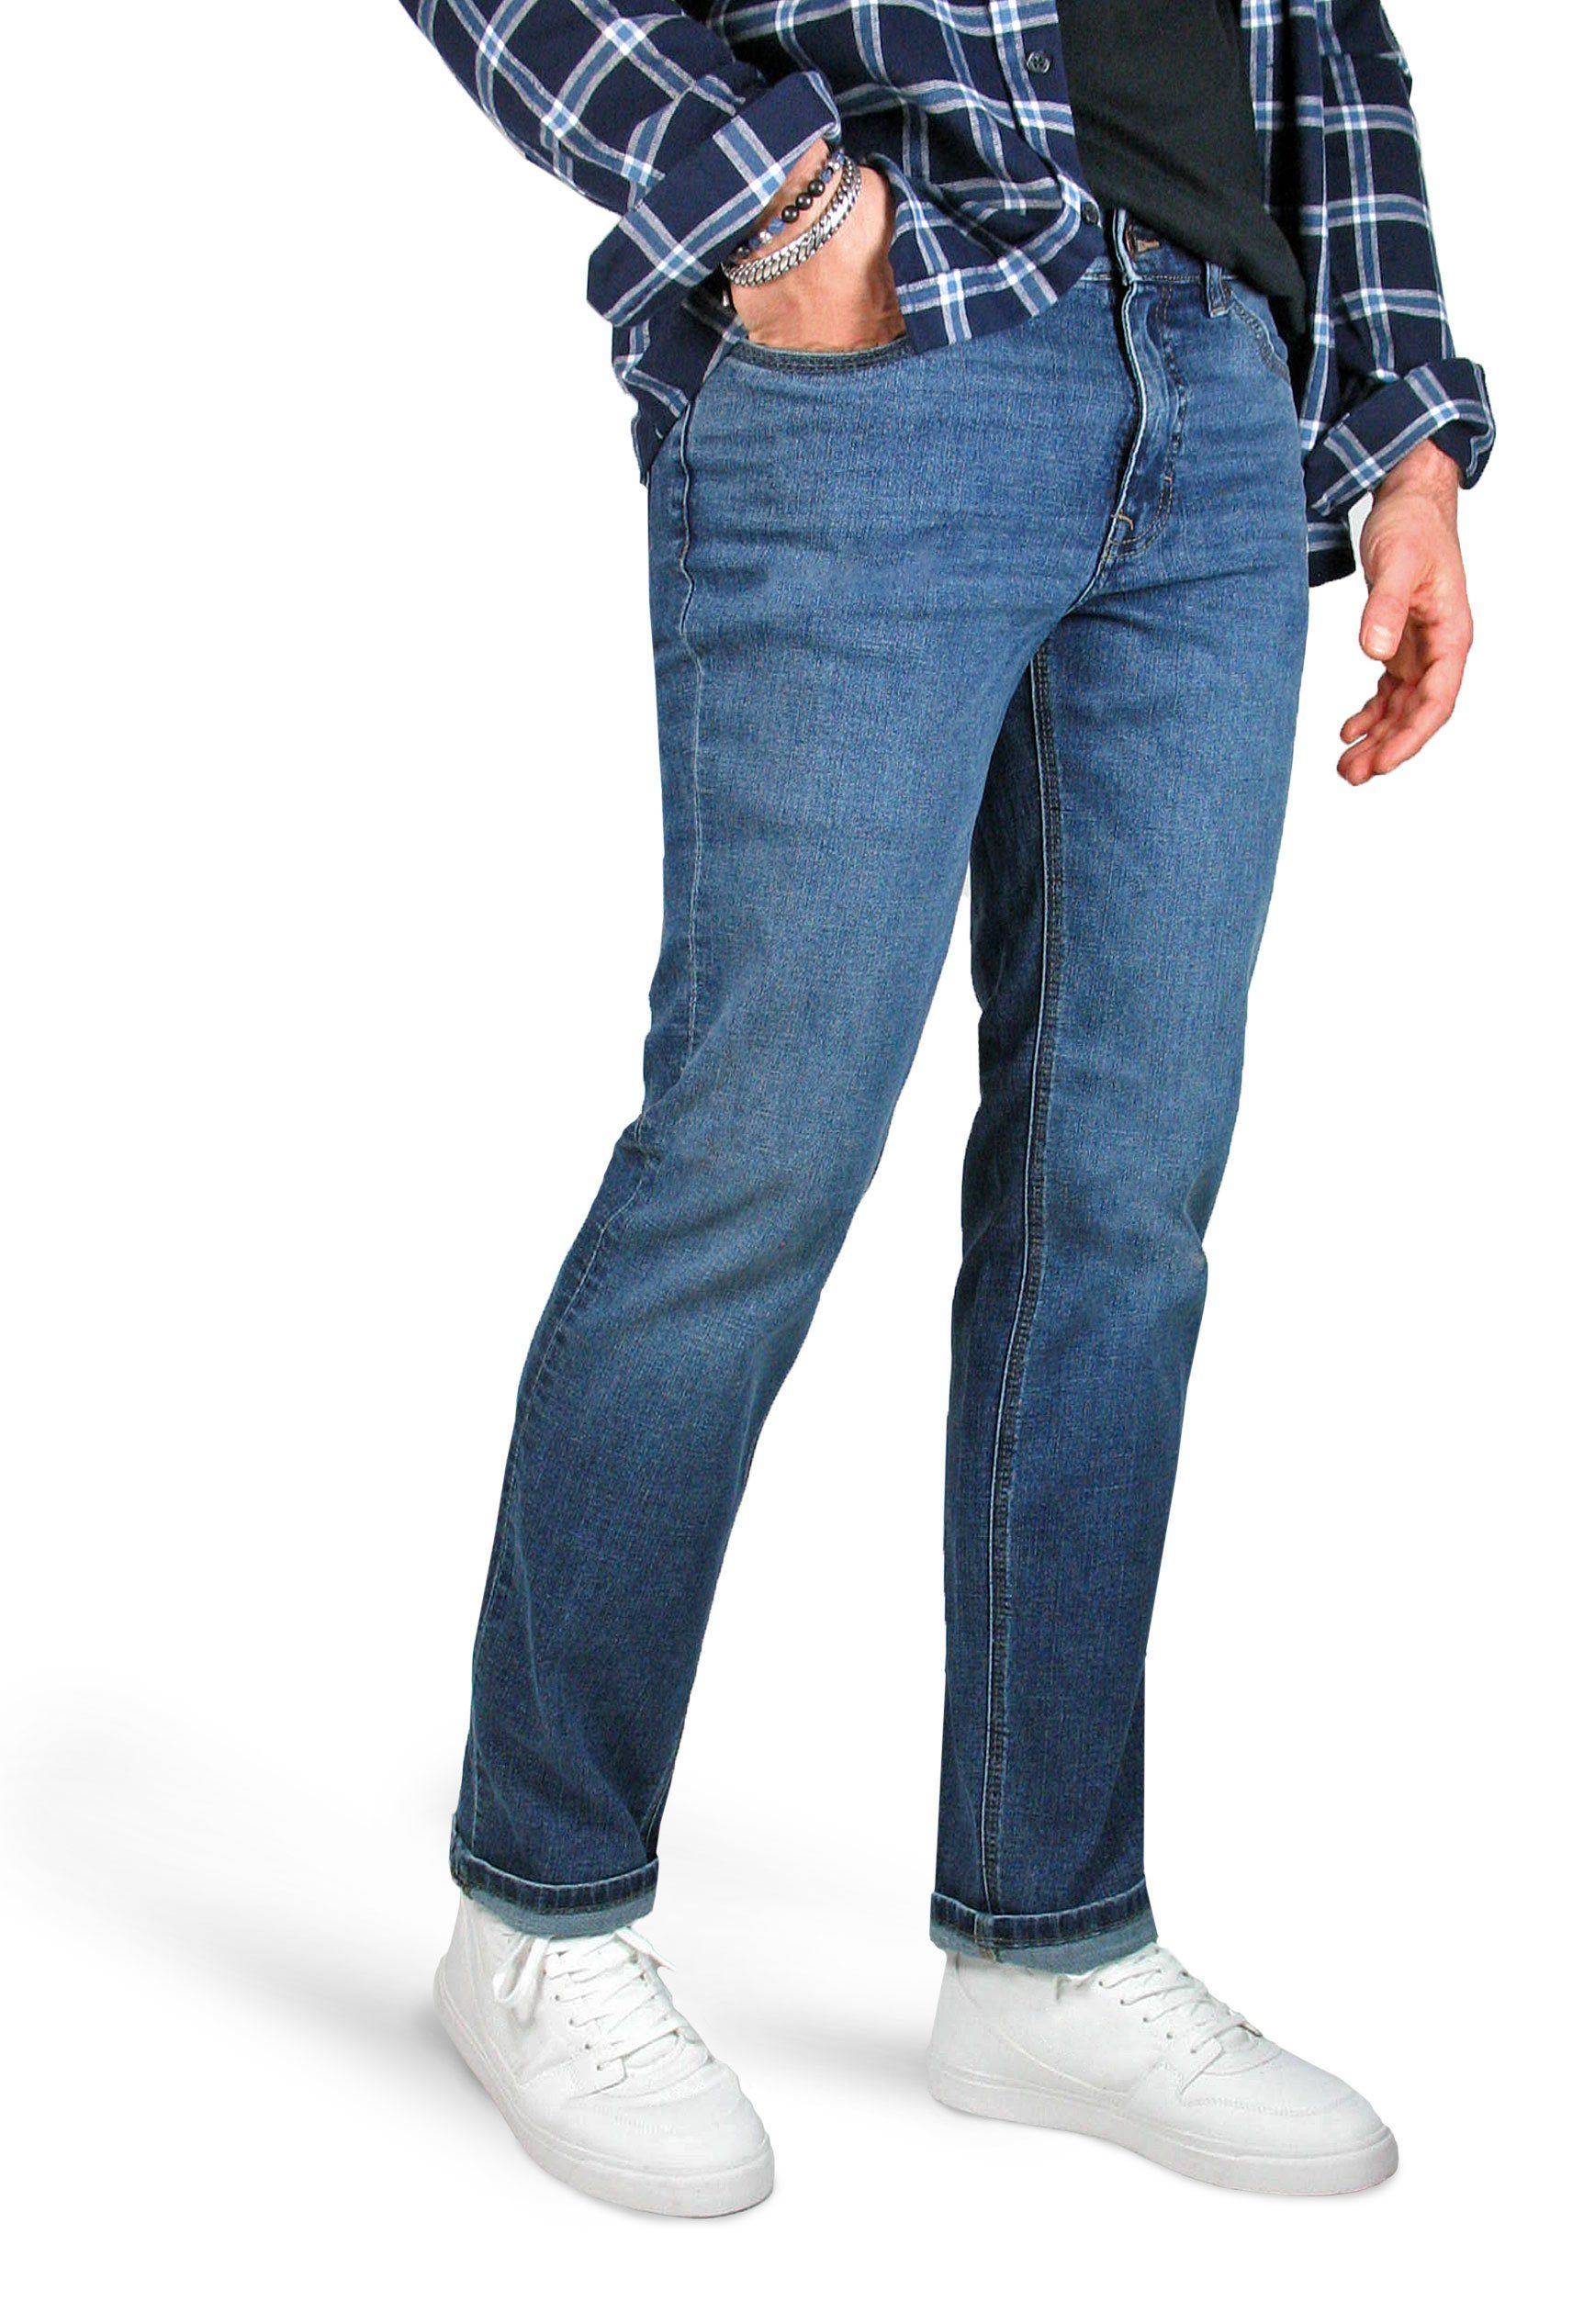 Paddock's 5-Pocket-Jeans Ranger Pipe Motion & Comfort Stretch Denim